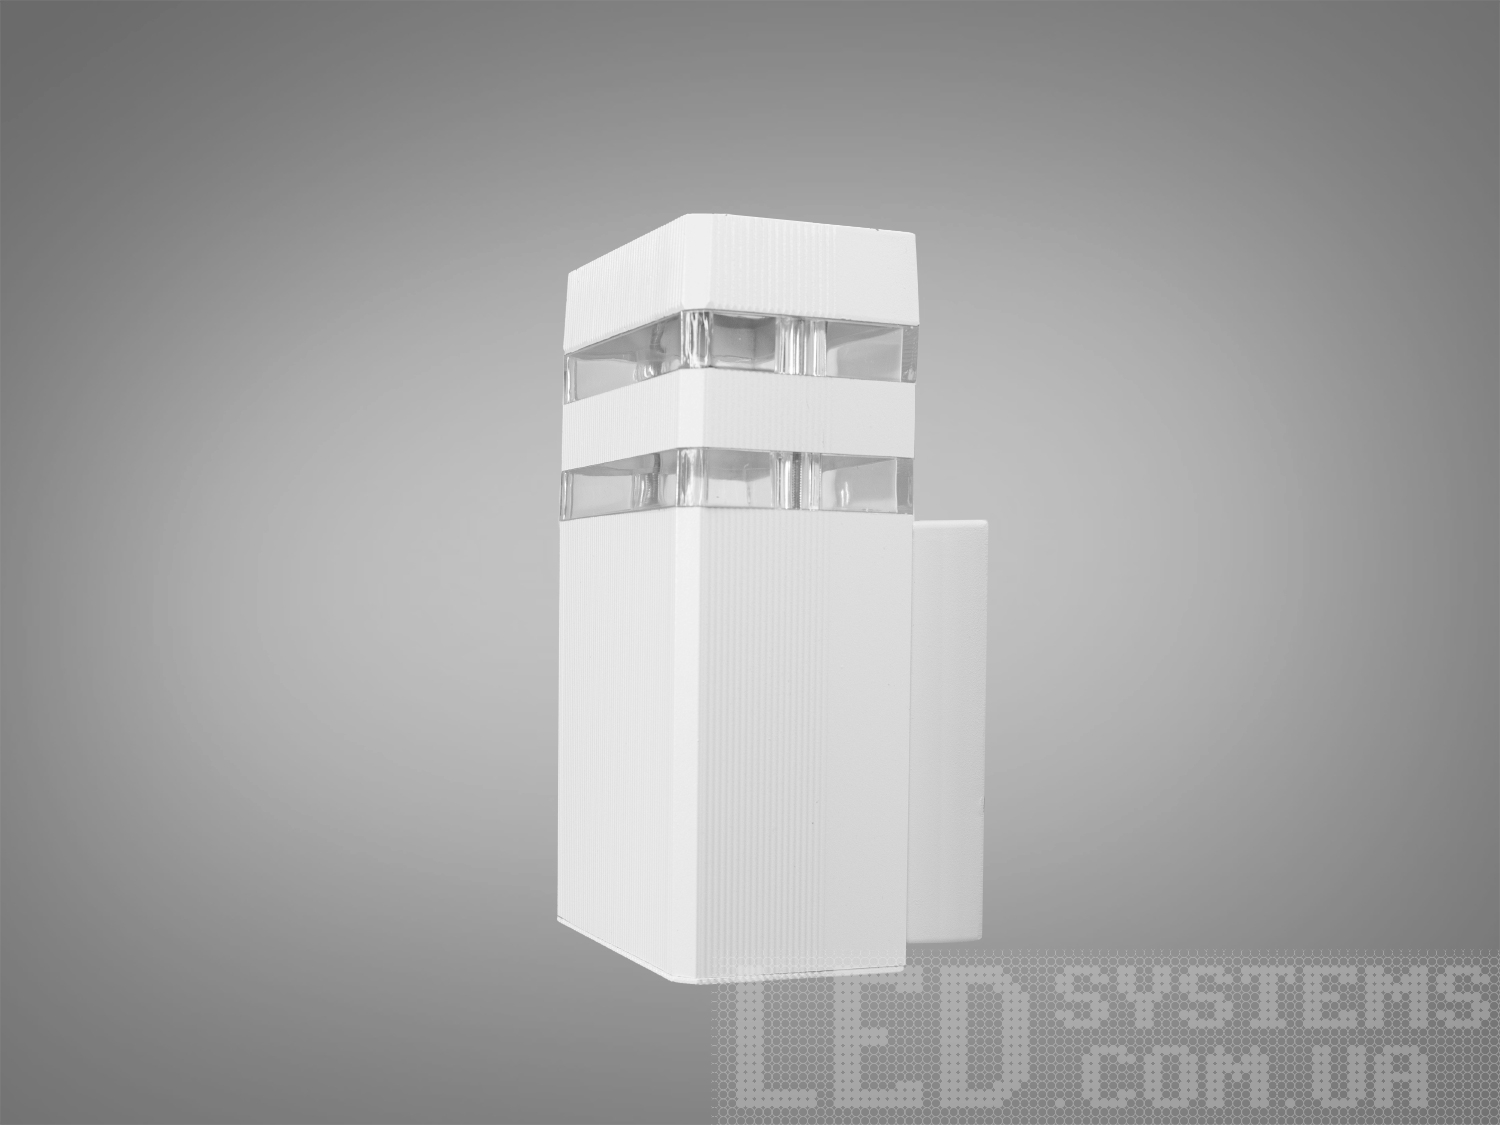 Фасадний світильник для підсвічування стін будинків, огорож, колонФасадные светильники, LED светильники, уличные светильники, Архитектурная подсветка